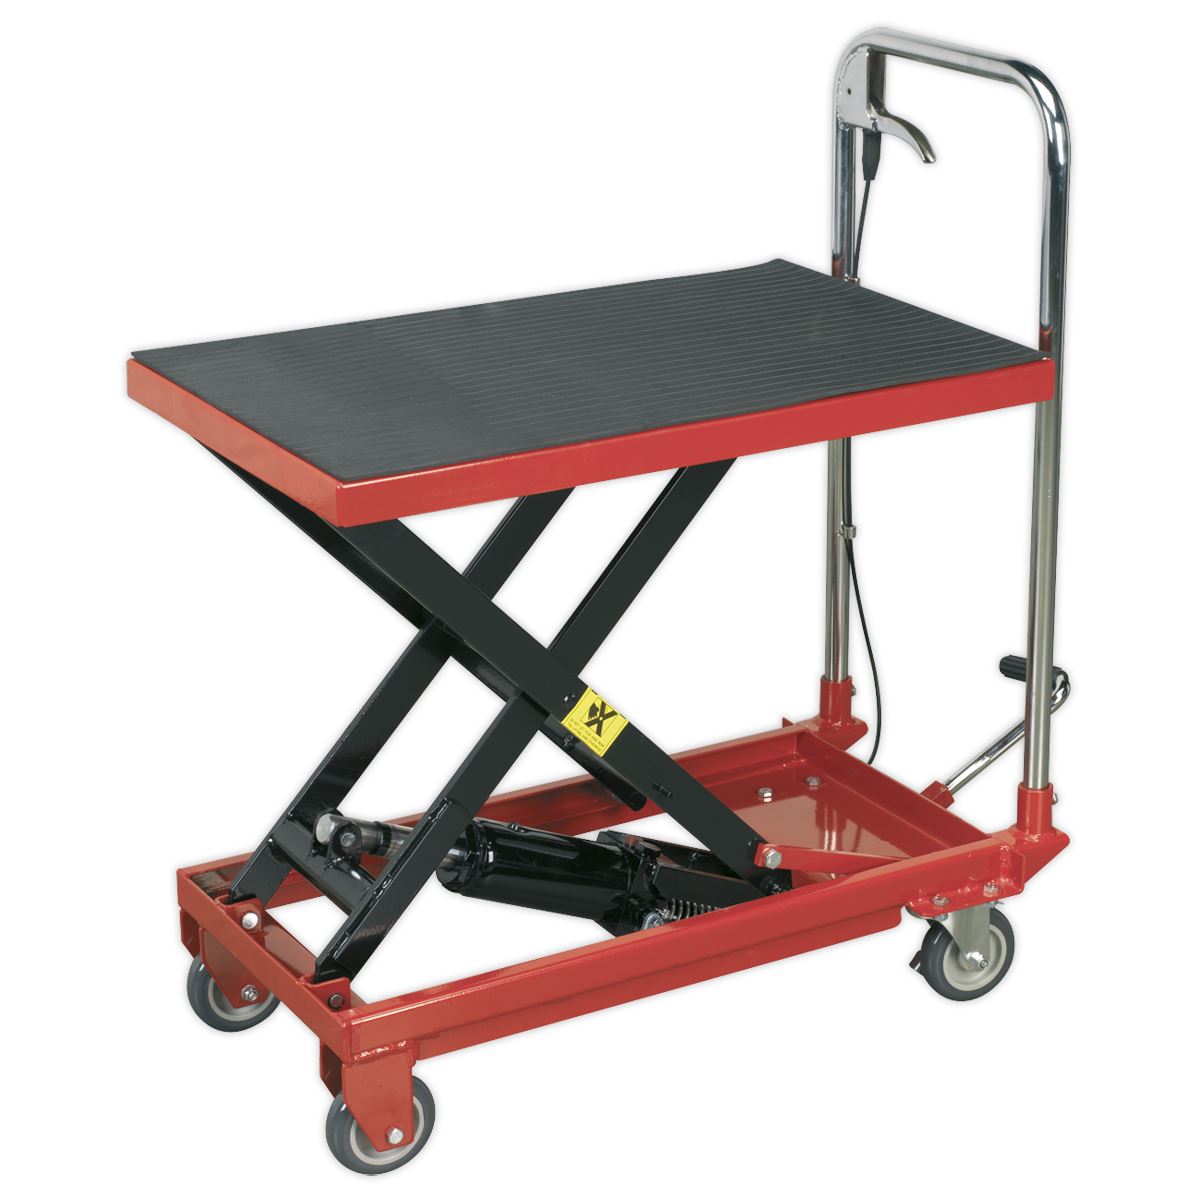 Sealey Hydraulic Scissor Lift Platform Table 150kg